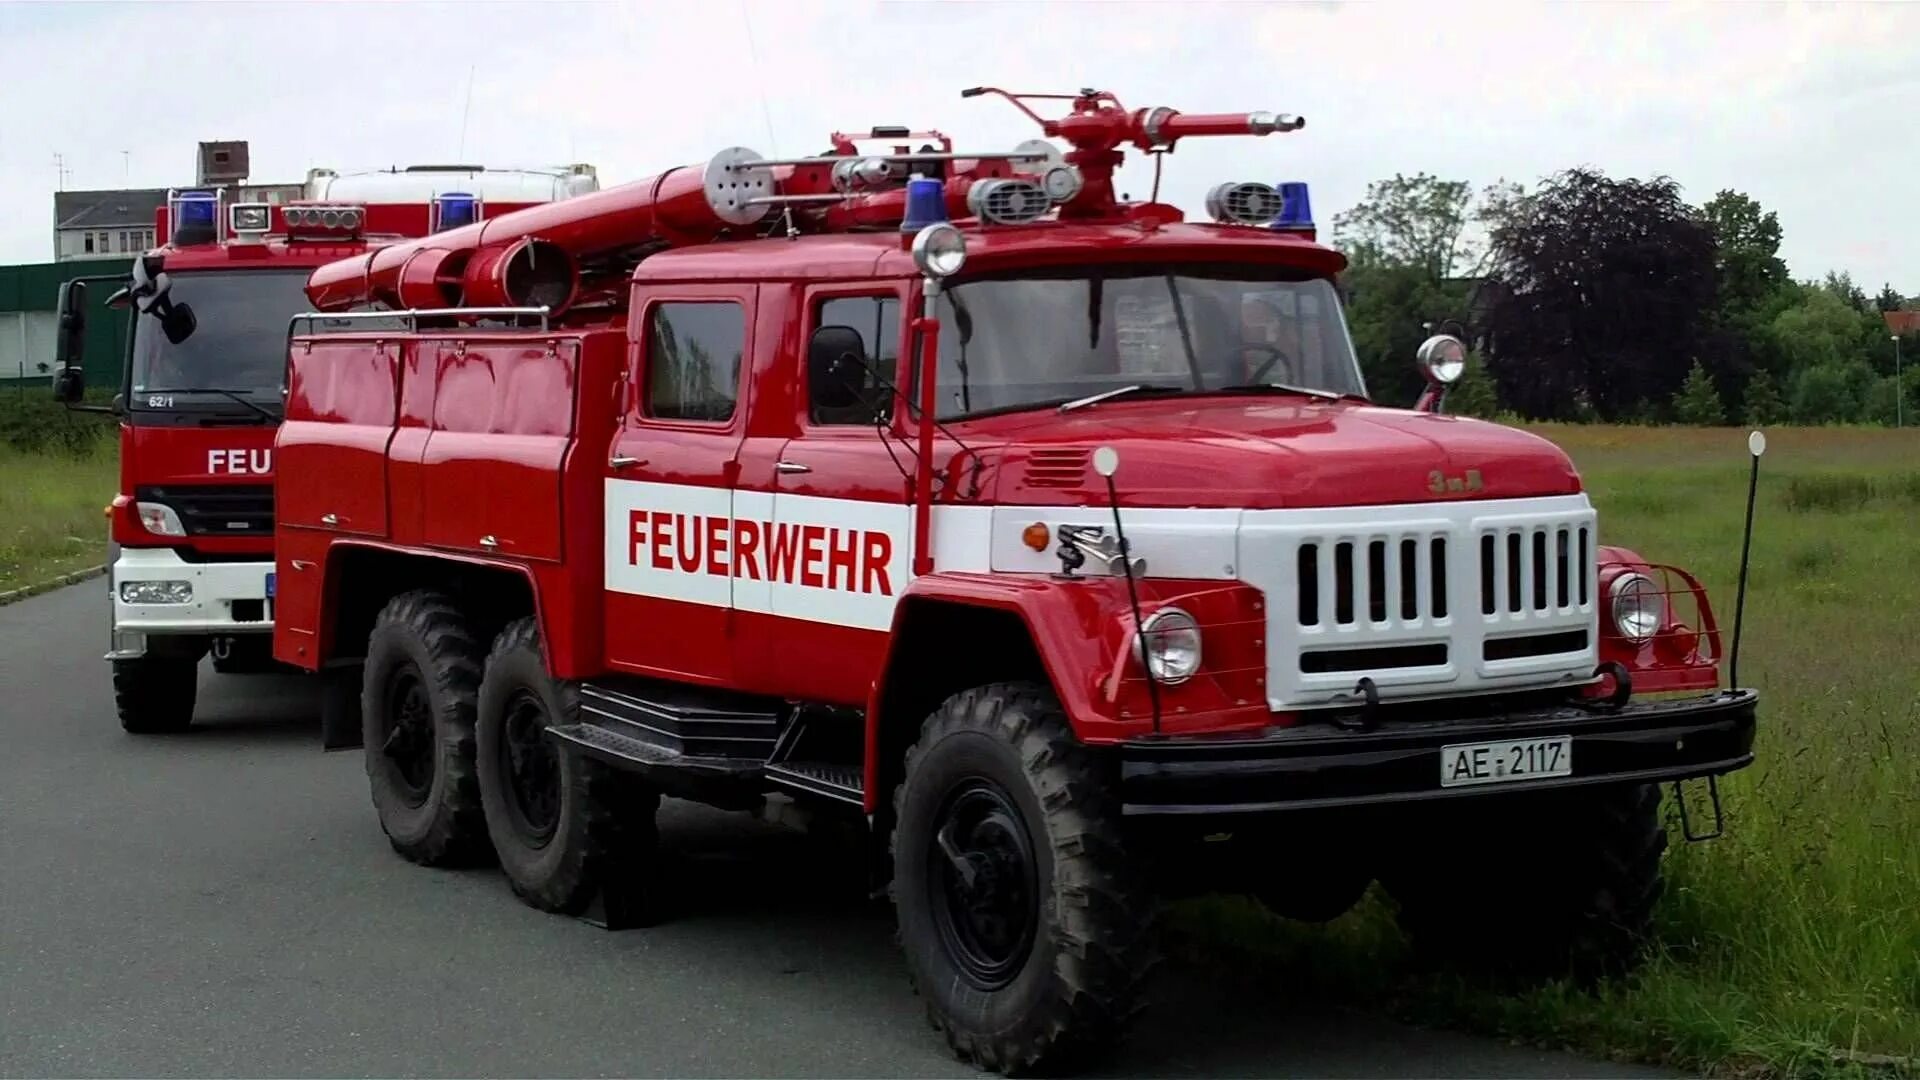 Пожарный автомобиль зил 131. Пожарная машина ЗИЛ 131. ЗИЛ 131 пожарный Германия. ЗИЛ 130 пожарный. ЗИЛ-131 пожарный автомобиль.